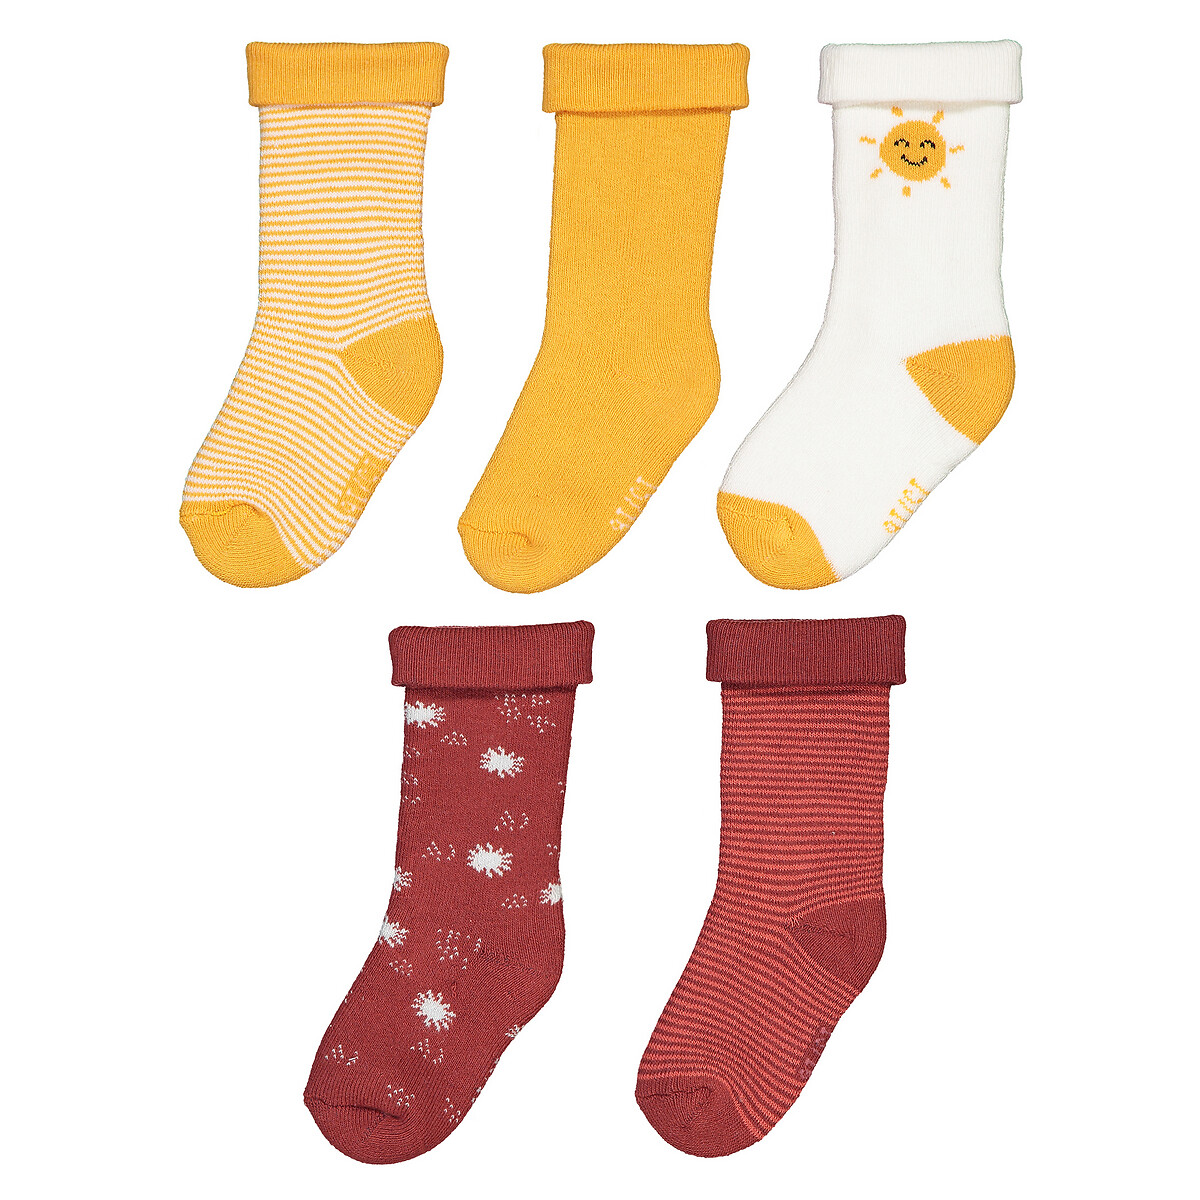 Комплект из 5 пар носков LaRedoute Из биохлопка размеры 1314-1920 15/16 разноцветный